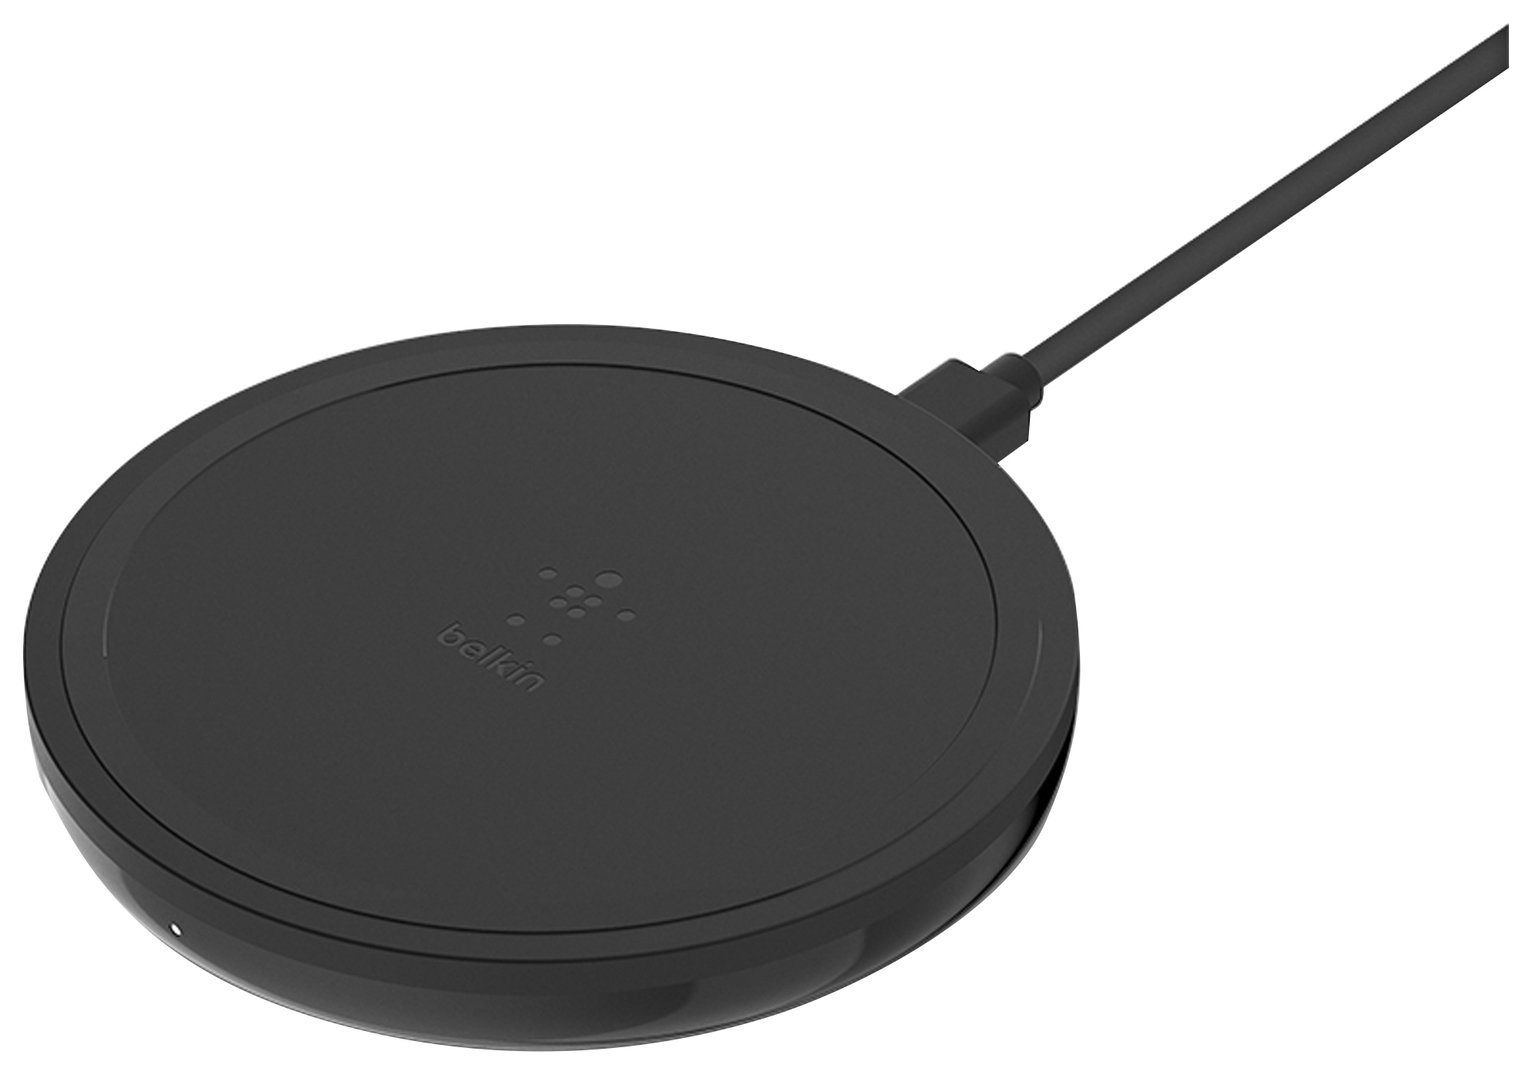 Belkin Qi Certified 10W Wireless Charging Pad - Black